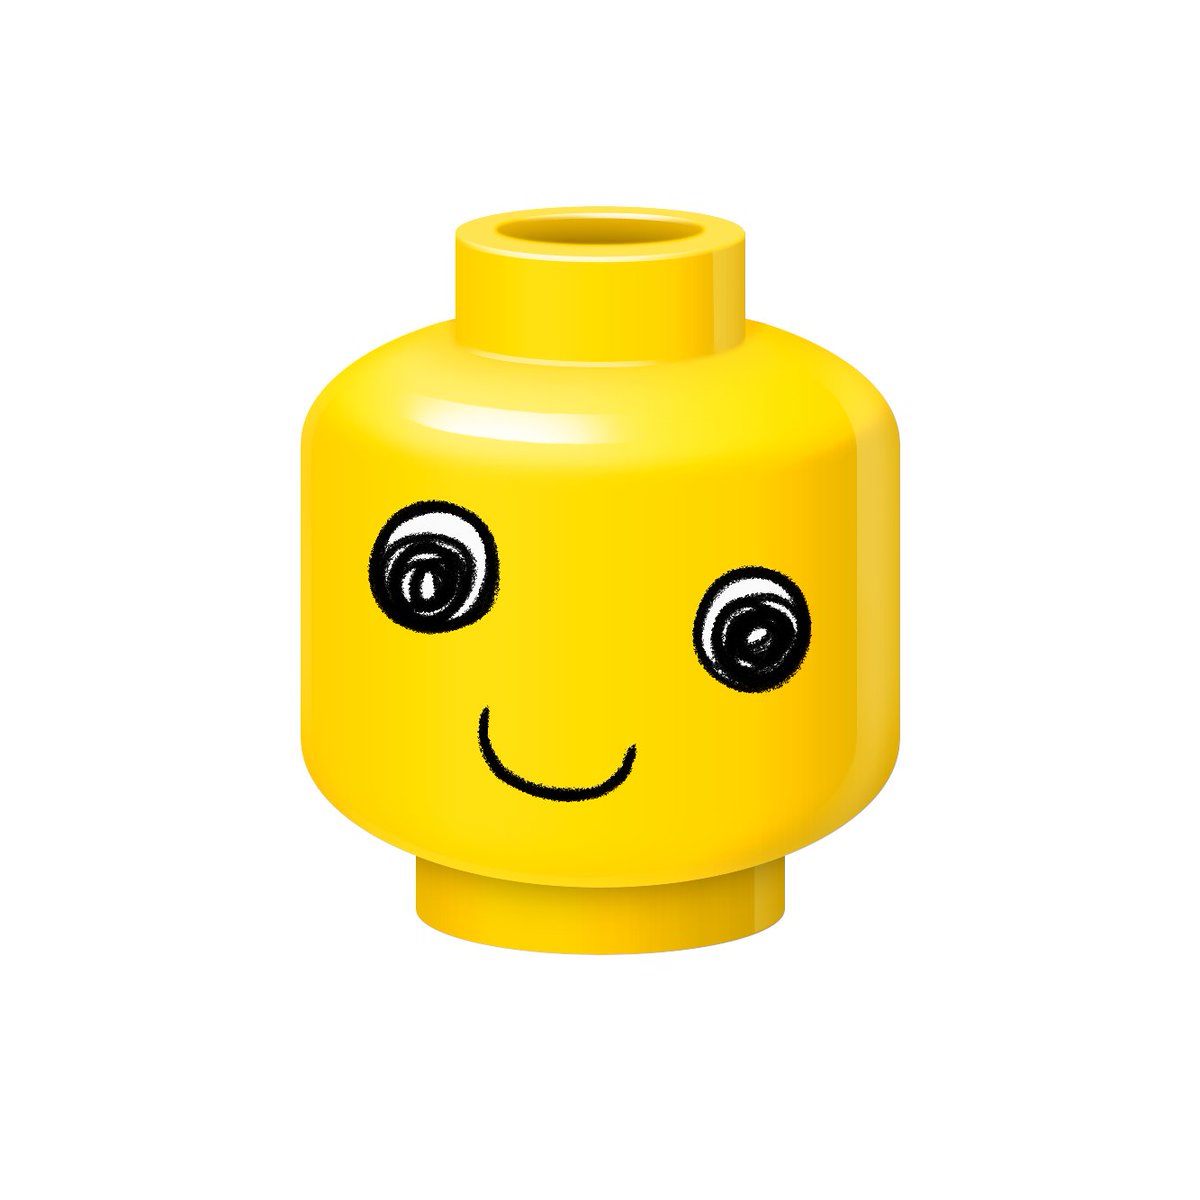 オンドブリック こんな感じで好きな顔とか描いて遊んでみるとか 一枚目の赤眼鏡は ぼくの自画像です レゴランドにこんなやつがいたら それがぼくです Lego イラスト Photoshop T Co Yidetfkbmq Twitter